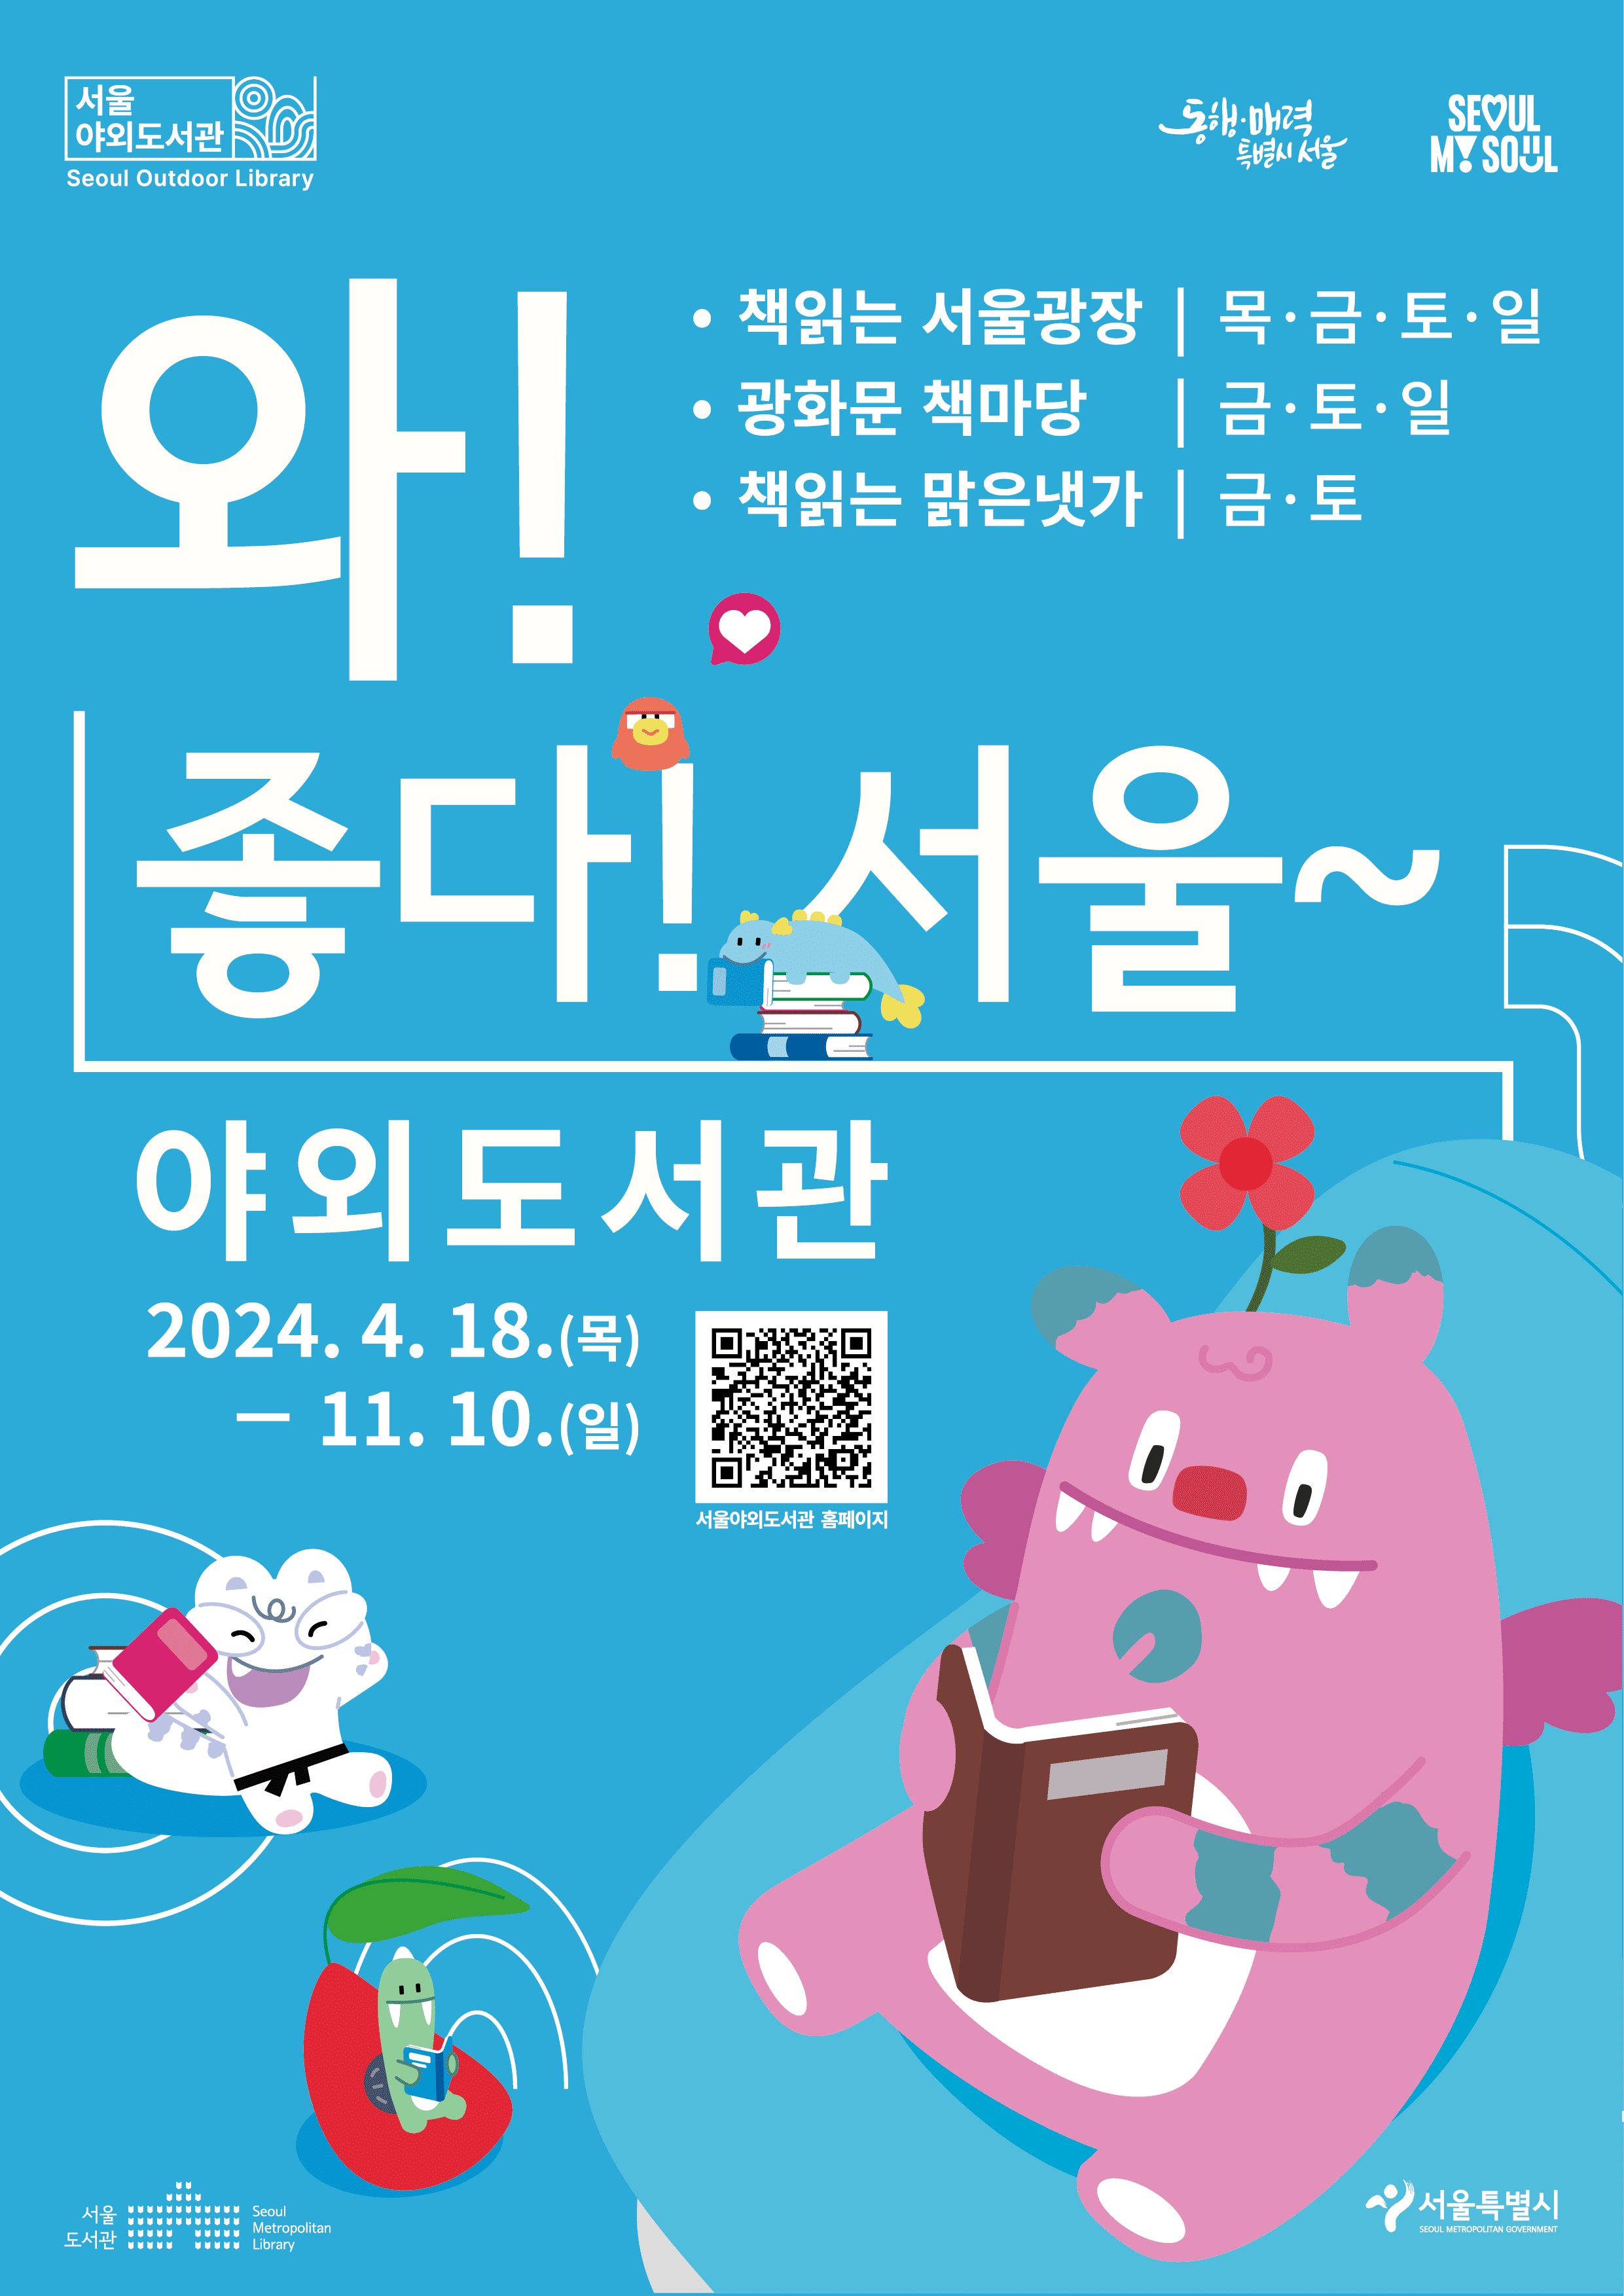 서울 야외도서관 정보